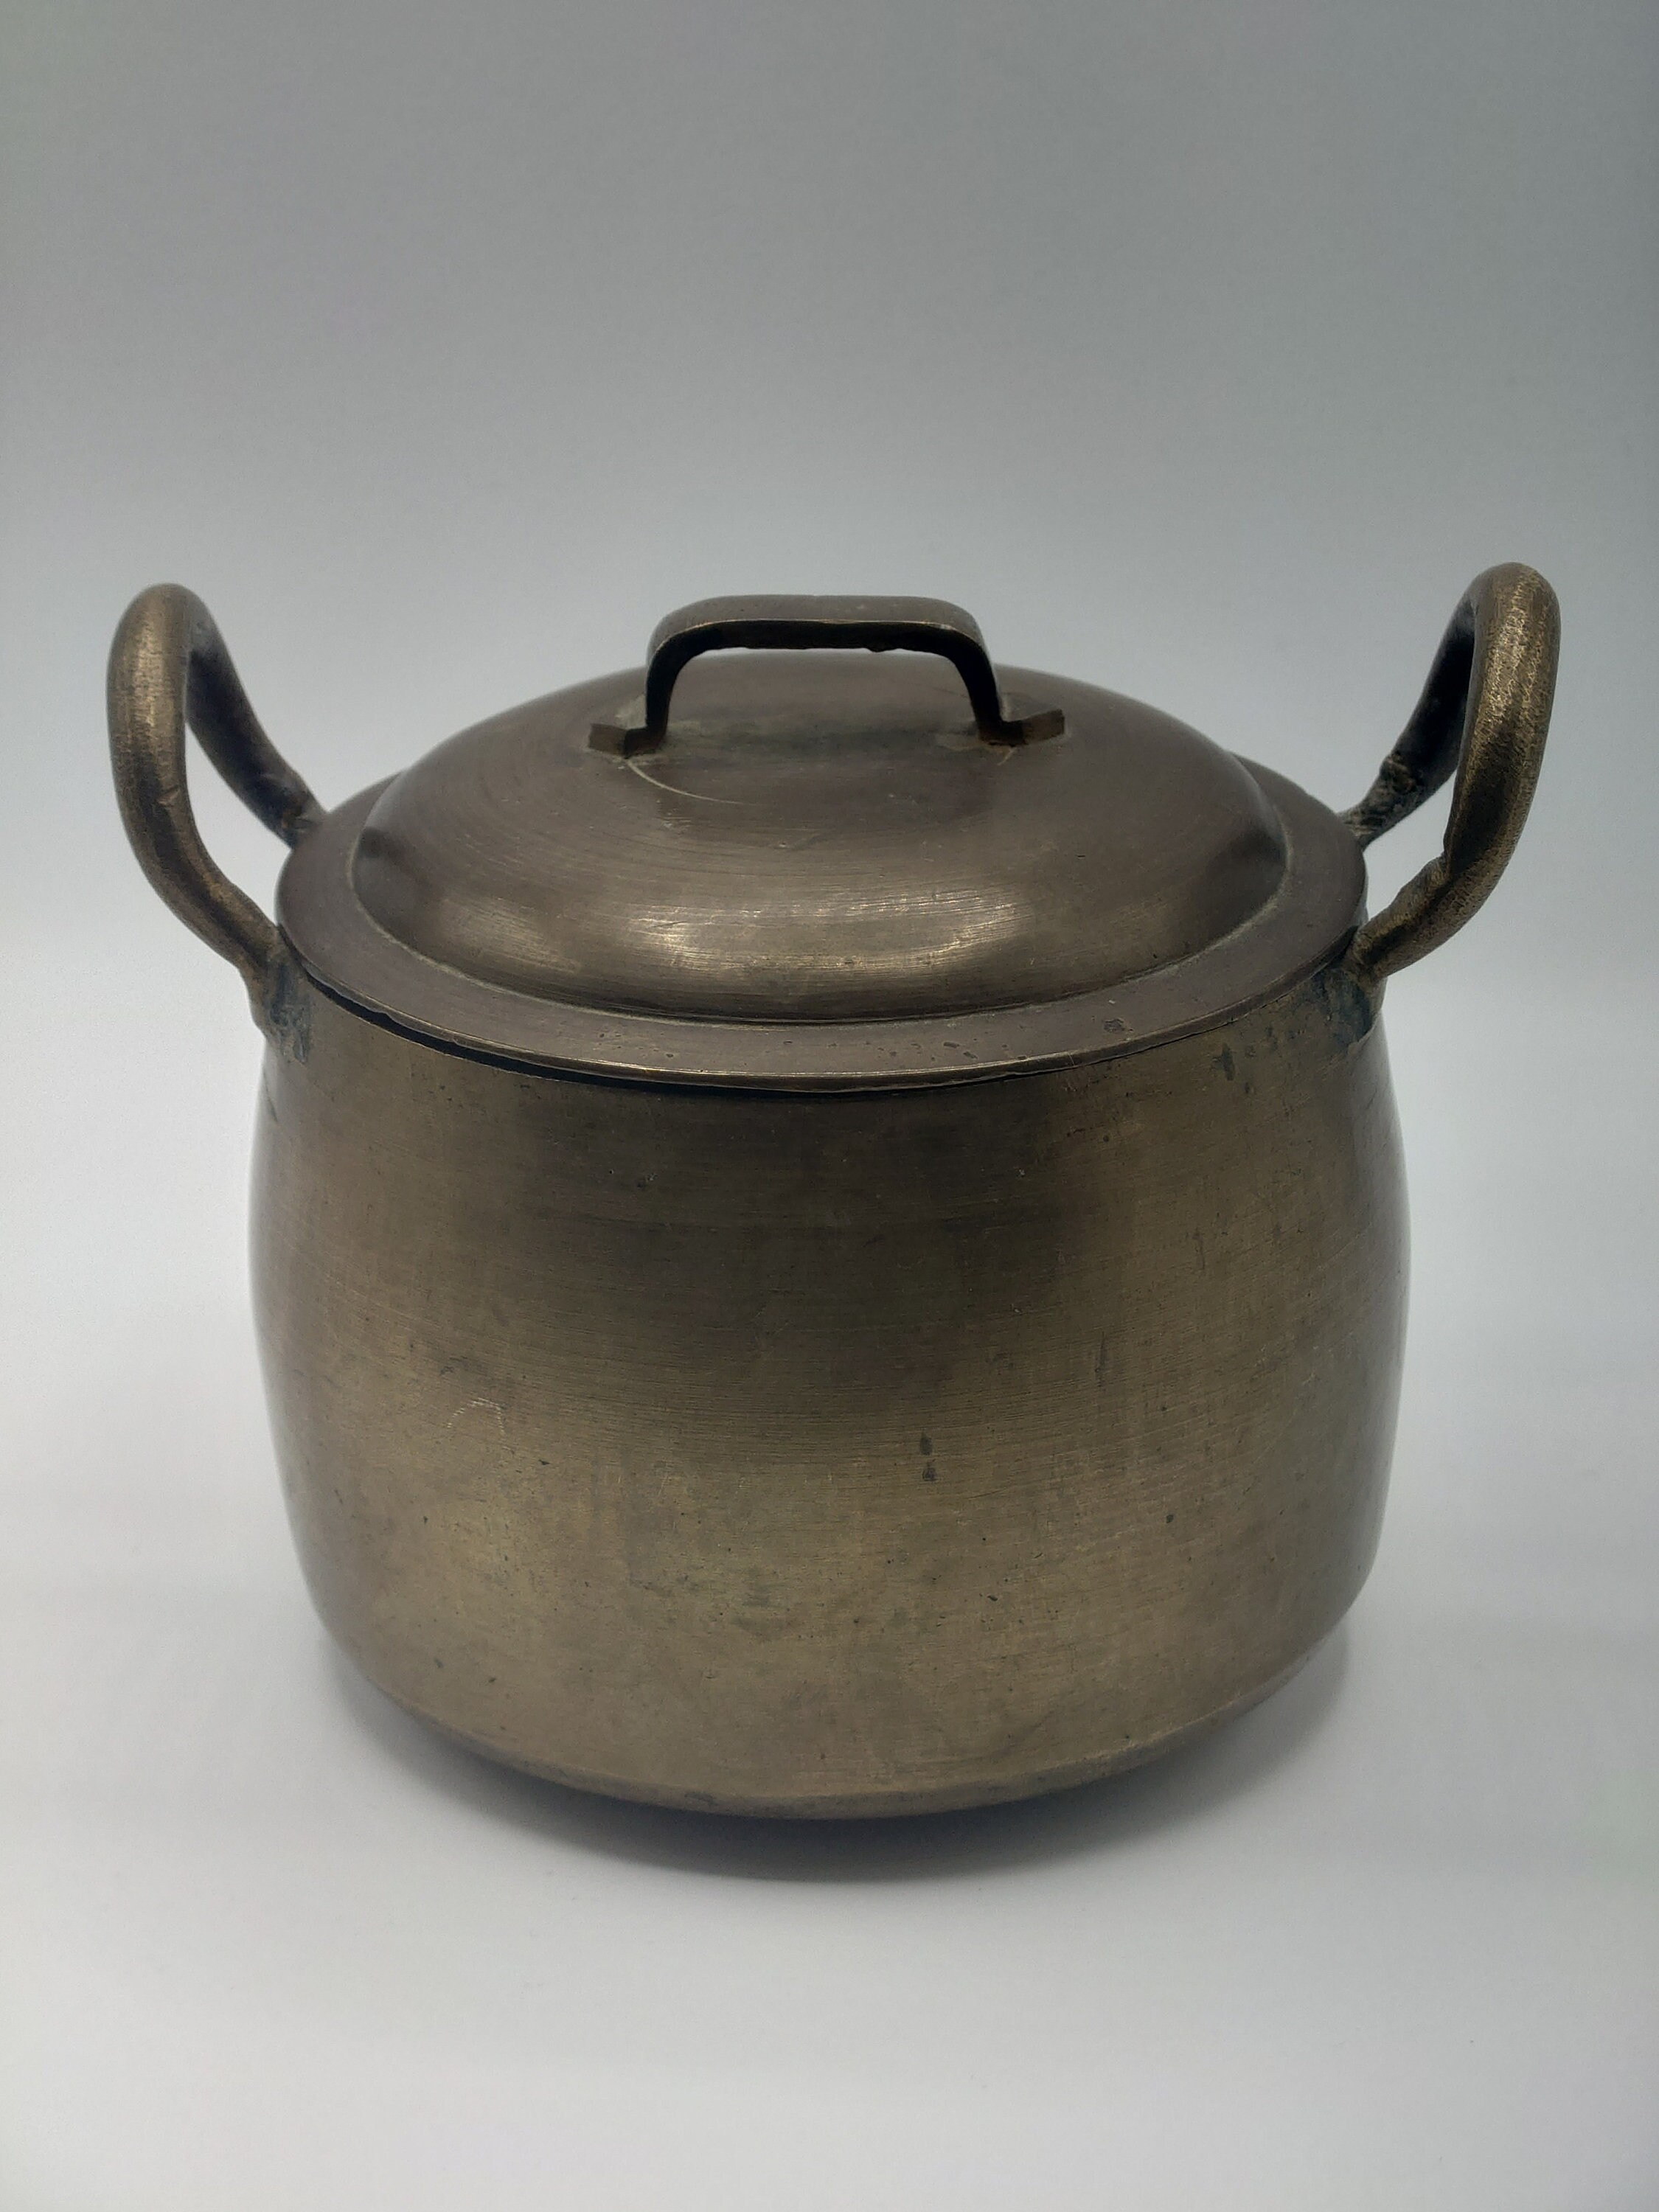 vintage old Cast Iron Kettle Pot - 3 gallon boiler kettle & tap T. HOLCROFT